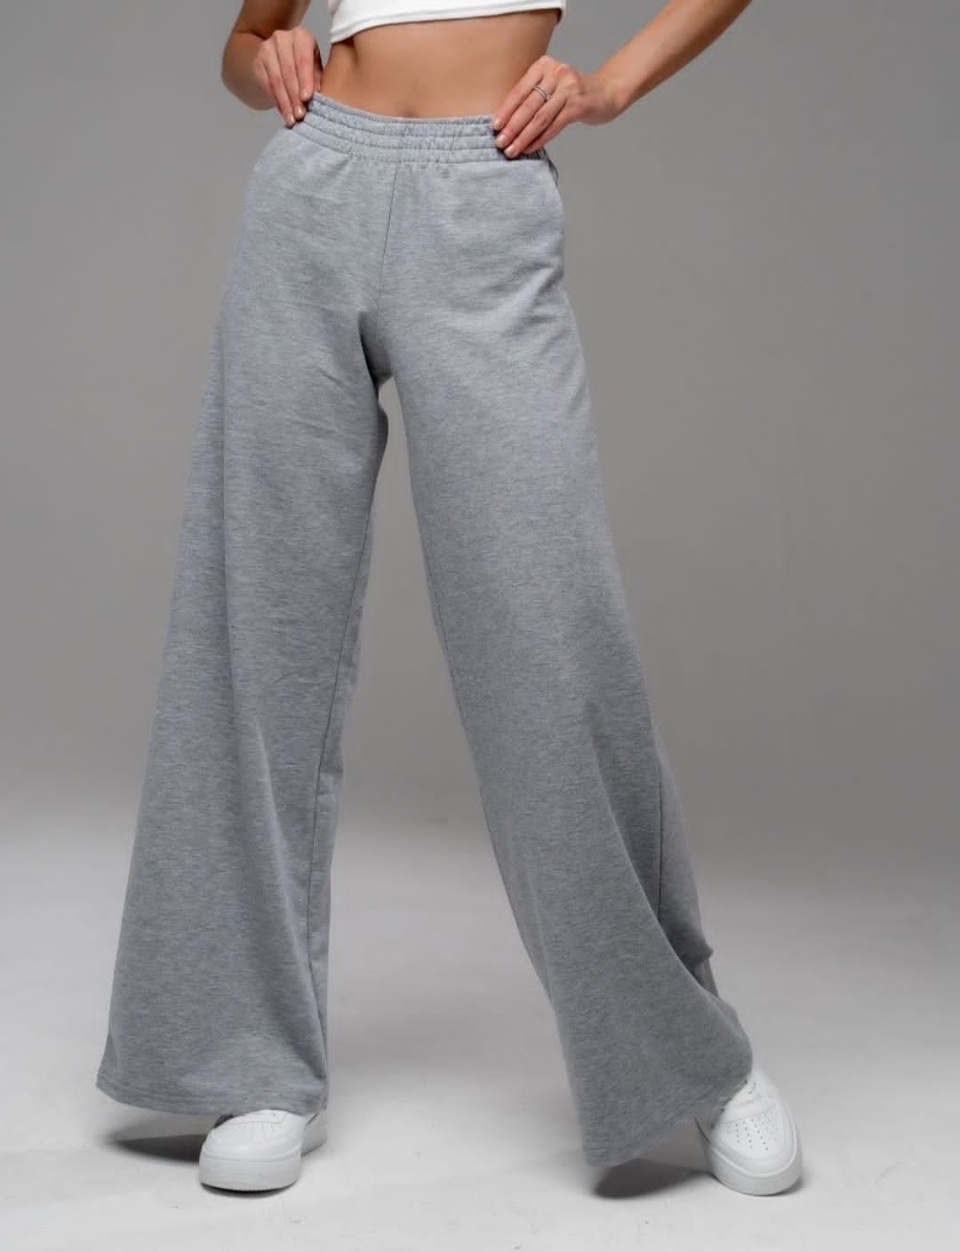 Спортивные штаны кюлоты - 1 700 ₽, заказать онлайн.